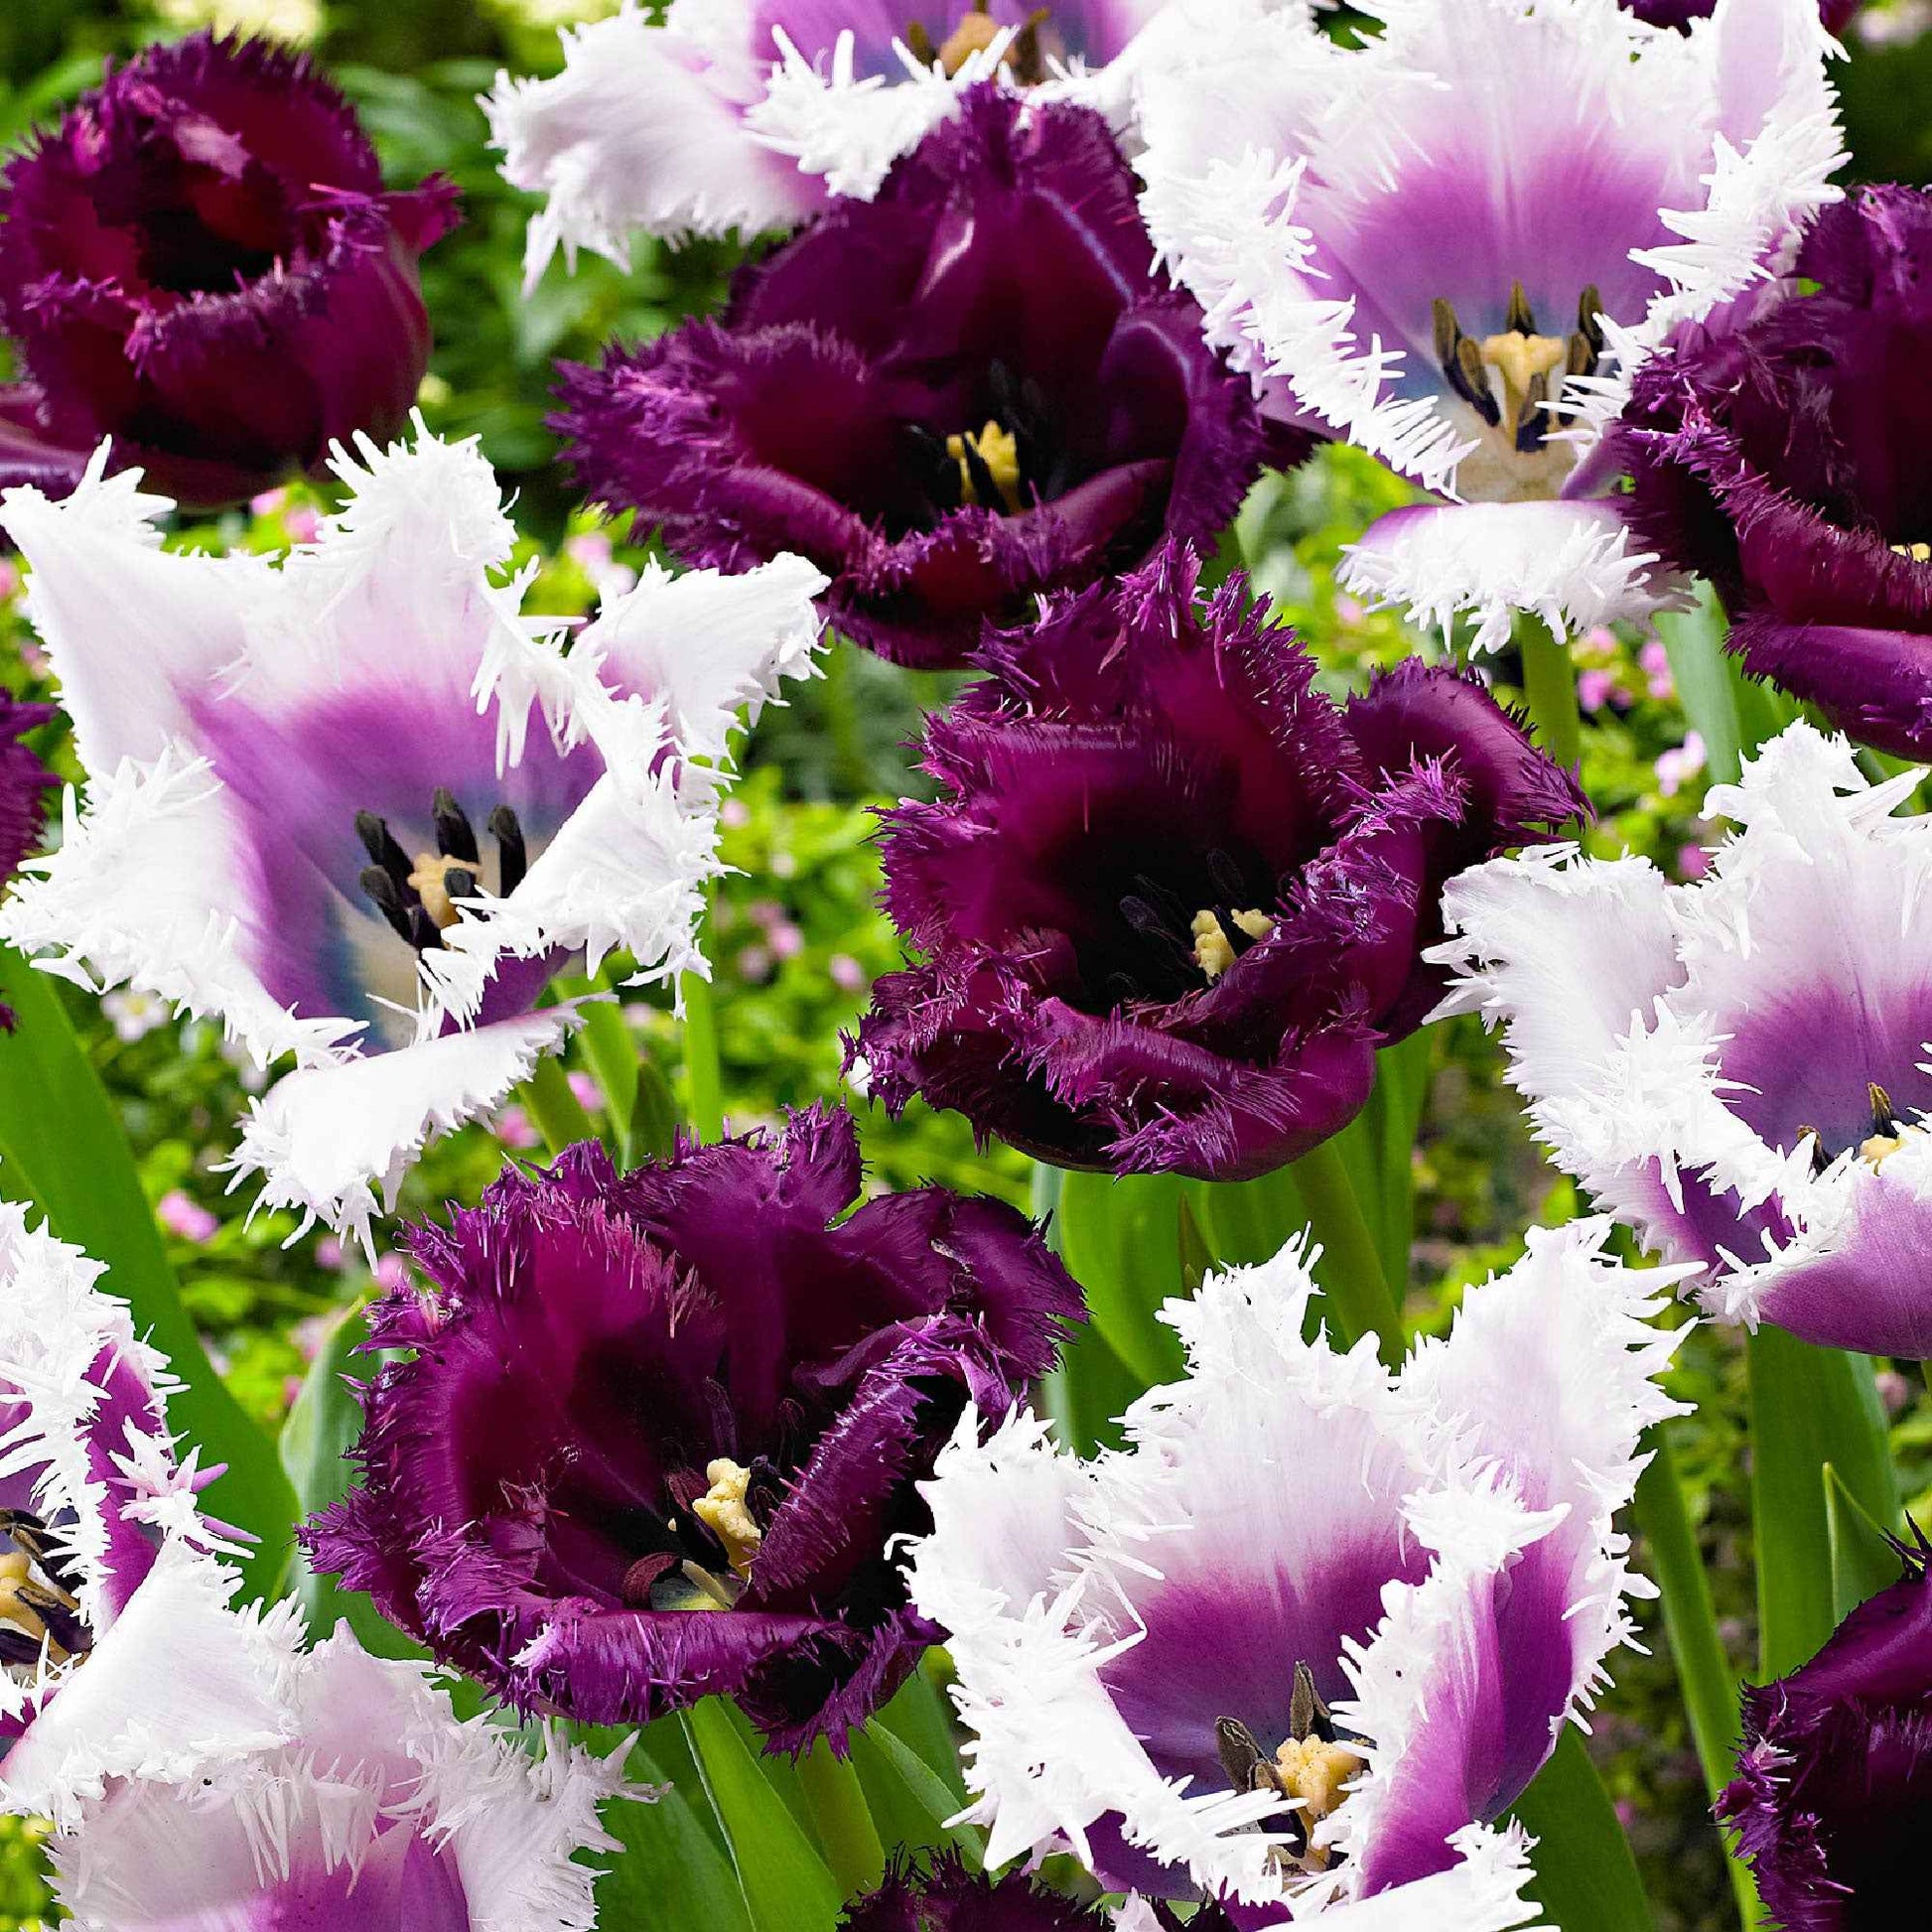 15x Gefranjerde tulpen Tulipa - Mix 'Van Gogh' paars-wit - Populaire bloembollen